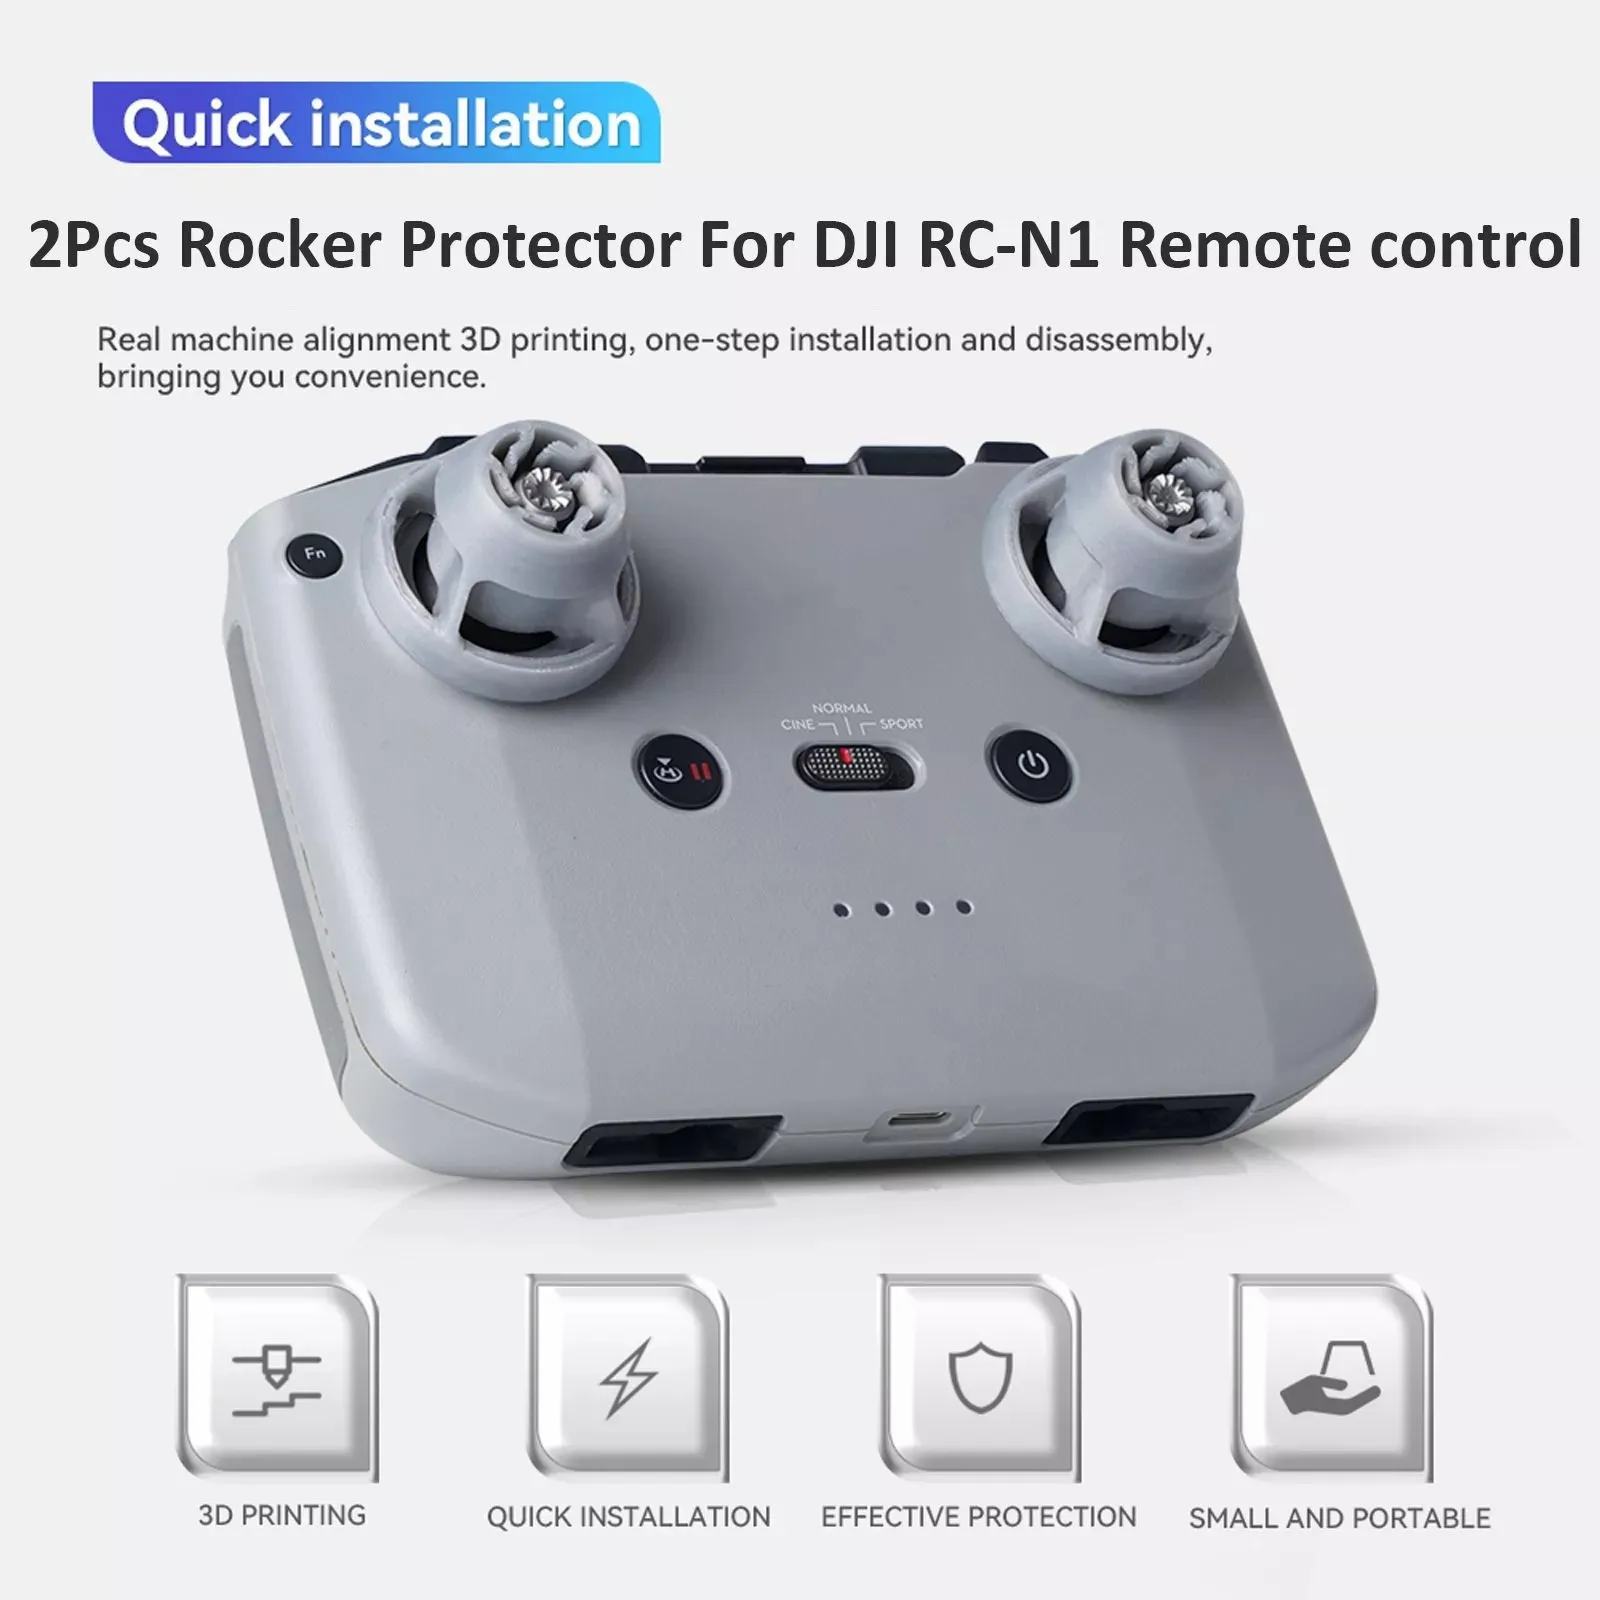 

Thumb Stick Joystick Remote Control For DJI Mini 3Pro RC-N1/Mini 2/Air 2S/Mavic3 Rocker Guards Protective Cover Drone Accessorie